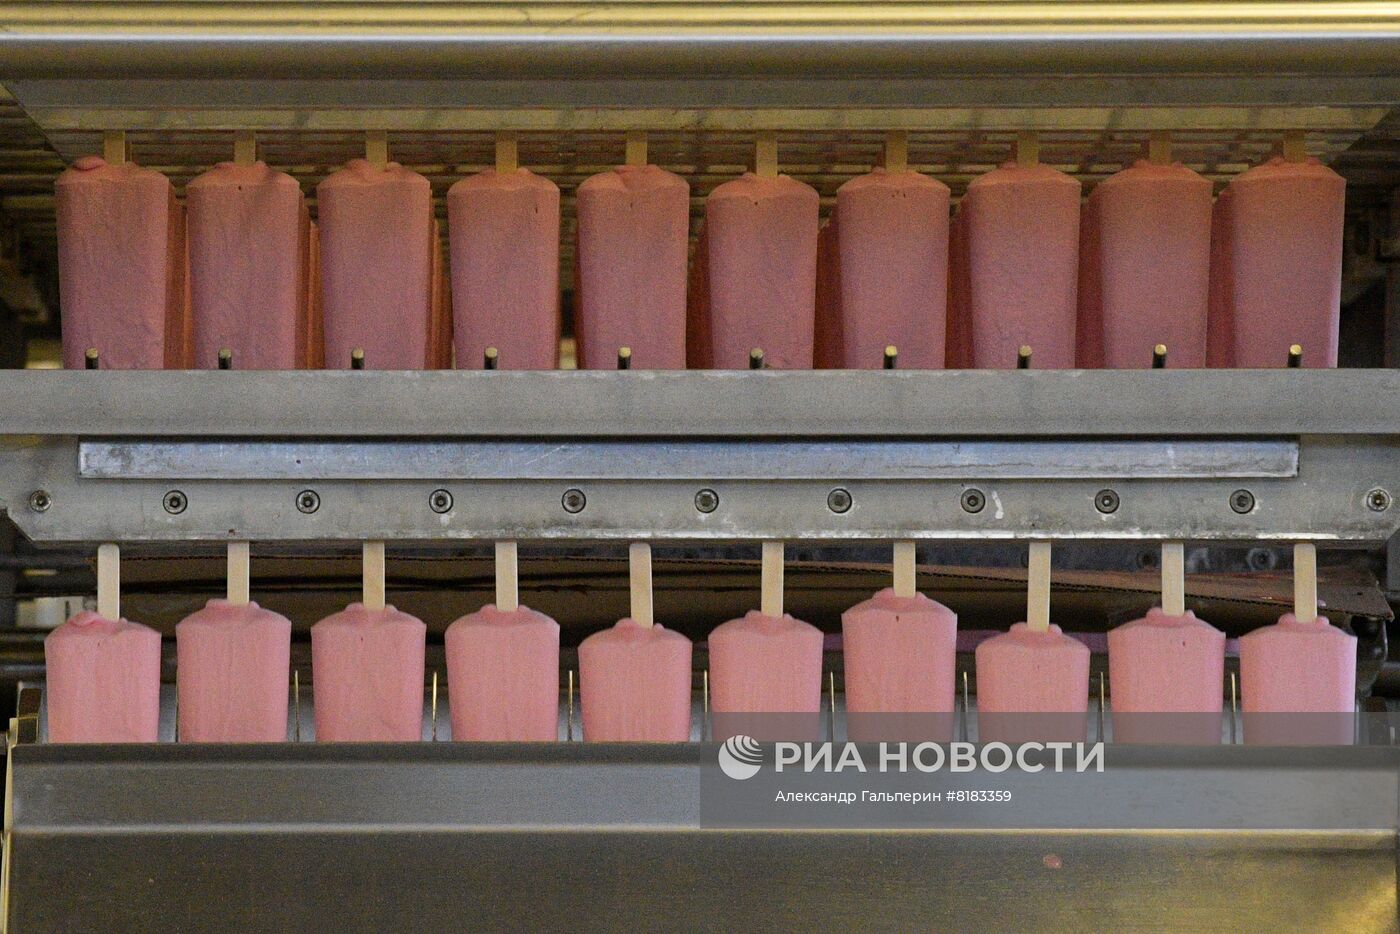 Производство мороженого на Луганском хладокомбинате